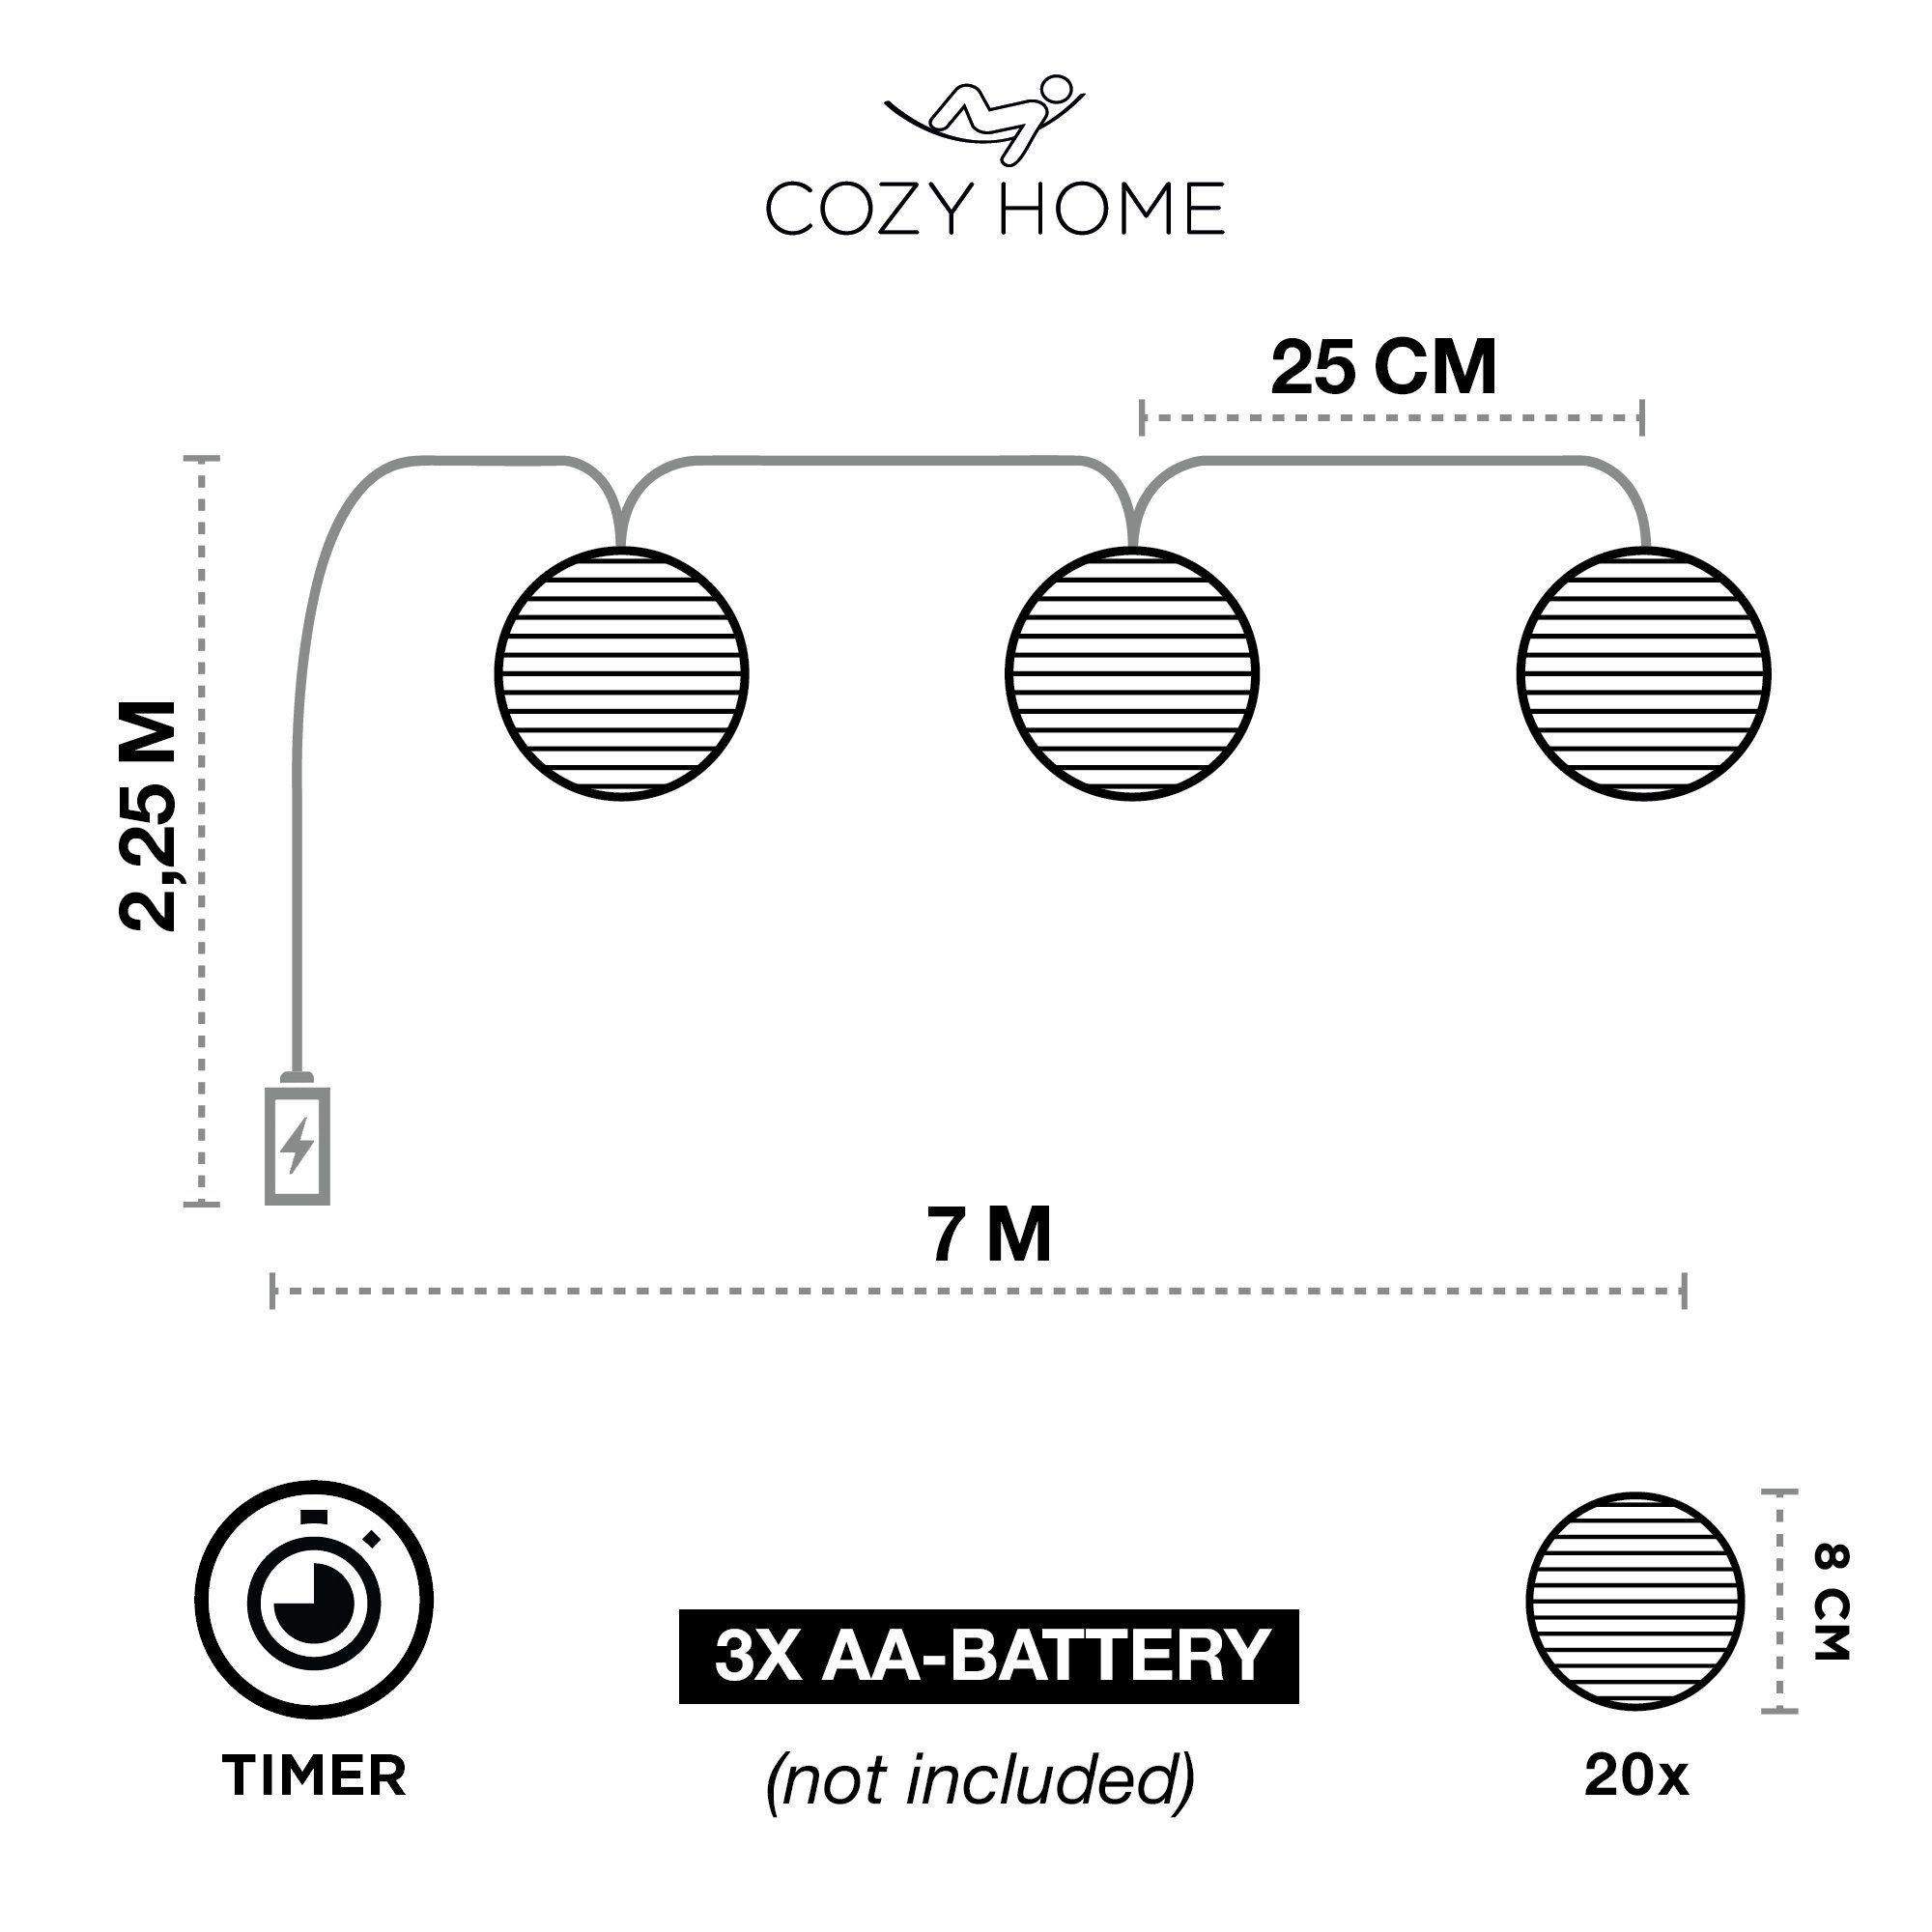 Home Cozy LED-Lichterkette Stecker Lampion Lichterkette Solar Batterie, und HOME COZY